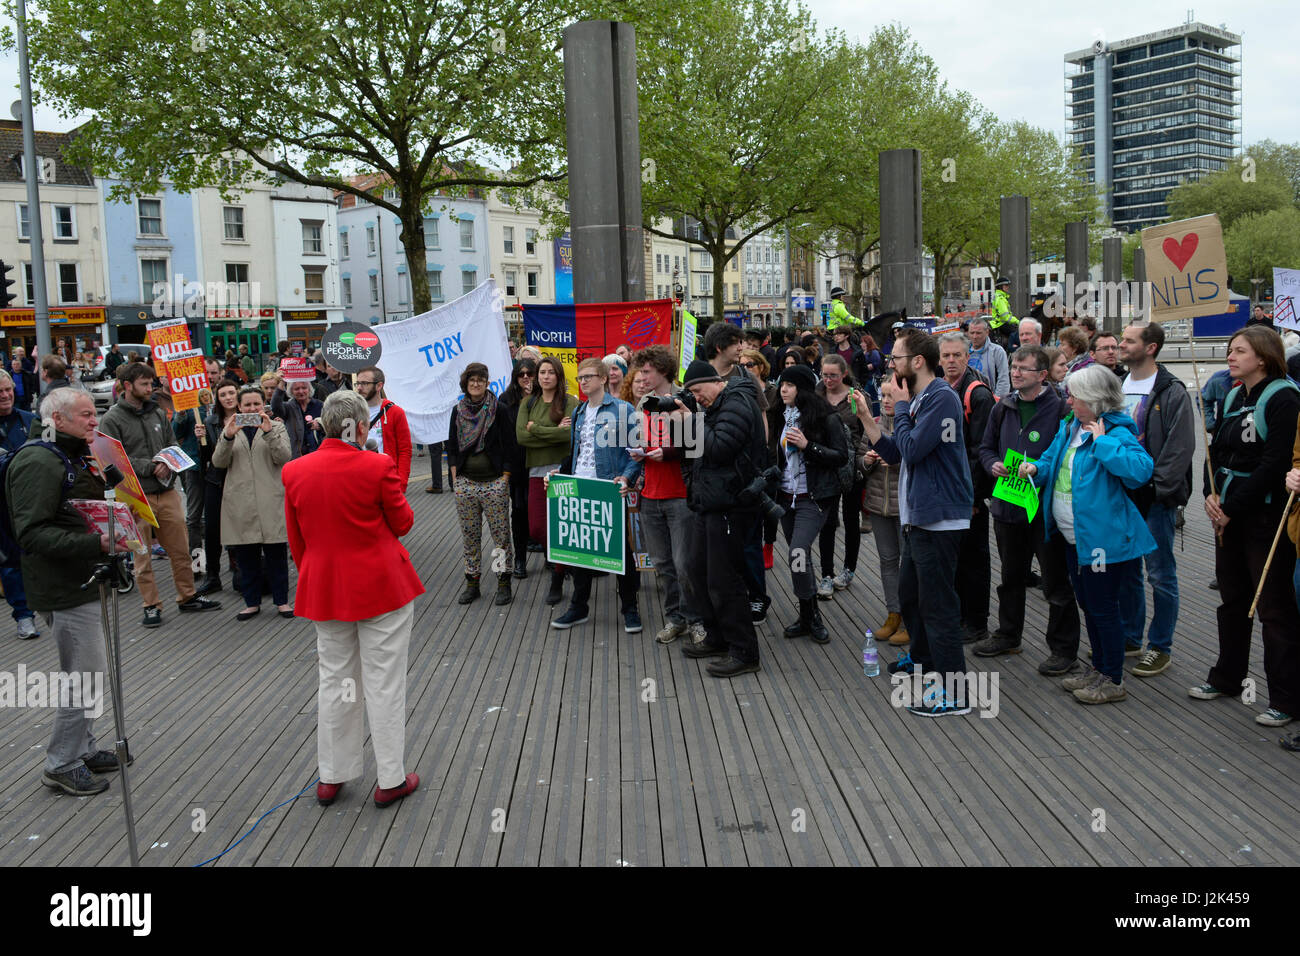 Bristol, UK. 29. April 2017. 1. große Demo von linken Aktivisten durchhalten Tories in der Stadt Bristol in Großbritannien. Organisiert von der Versammlung der Völker. Bildnachweis: Robert Timoney/Alamy Live-Nachrichten Stockfoto